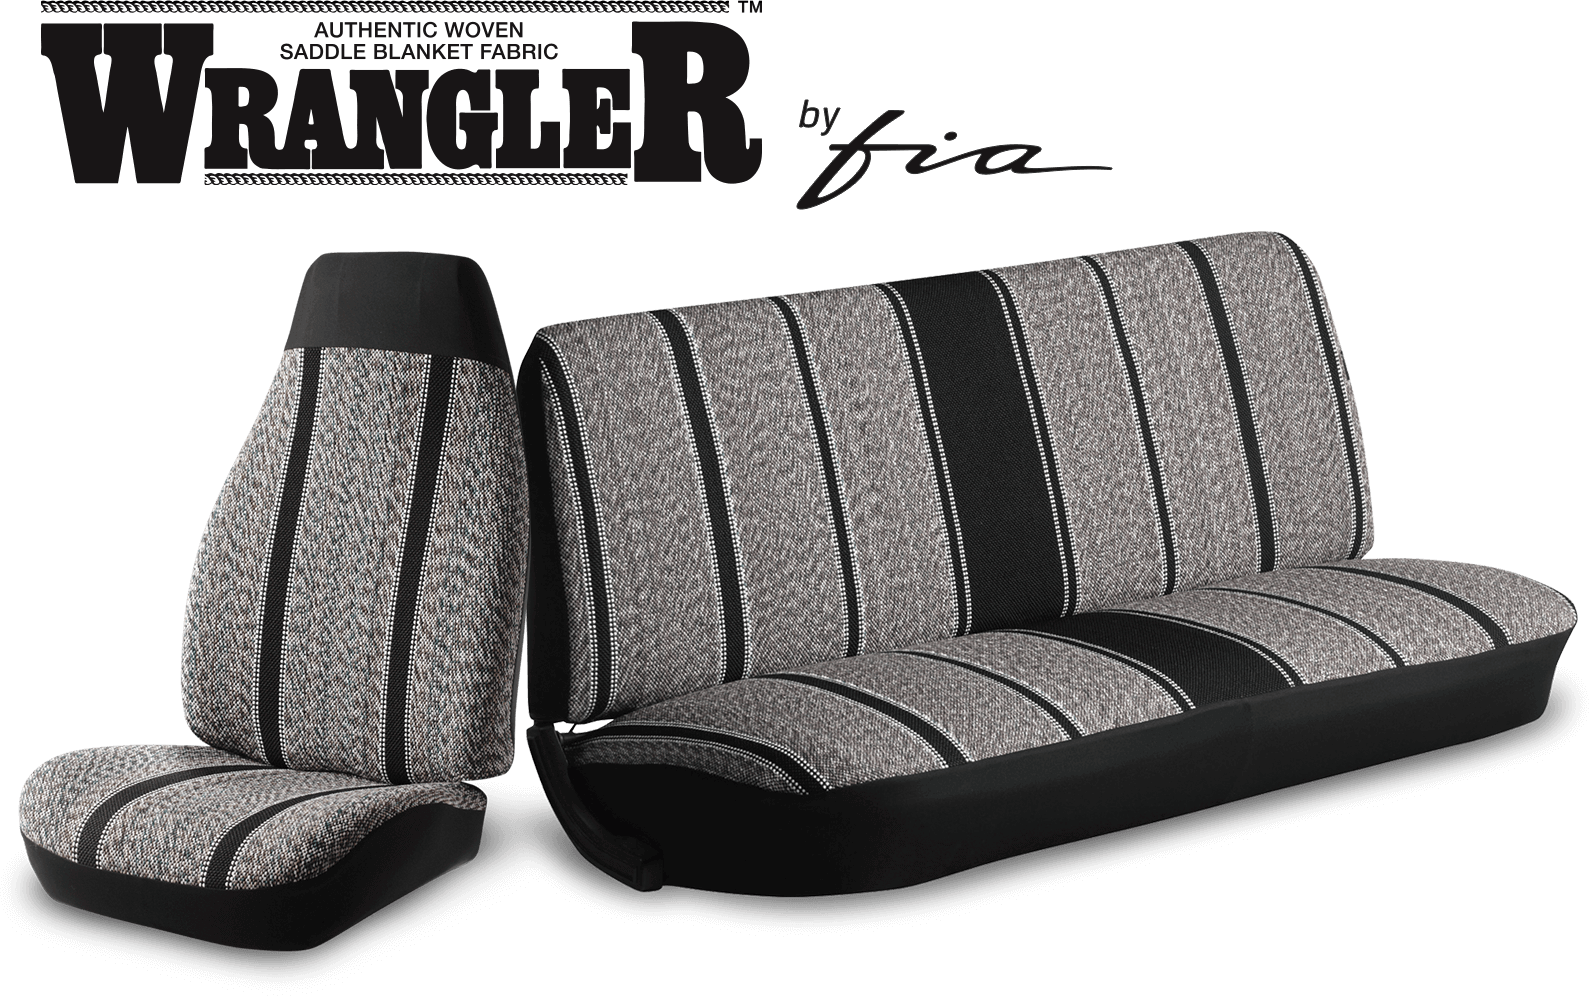 Wrangler™ Saddle Blanket Seat Covers for Trucks, Vans & SUVs